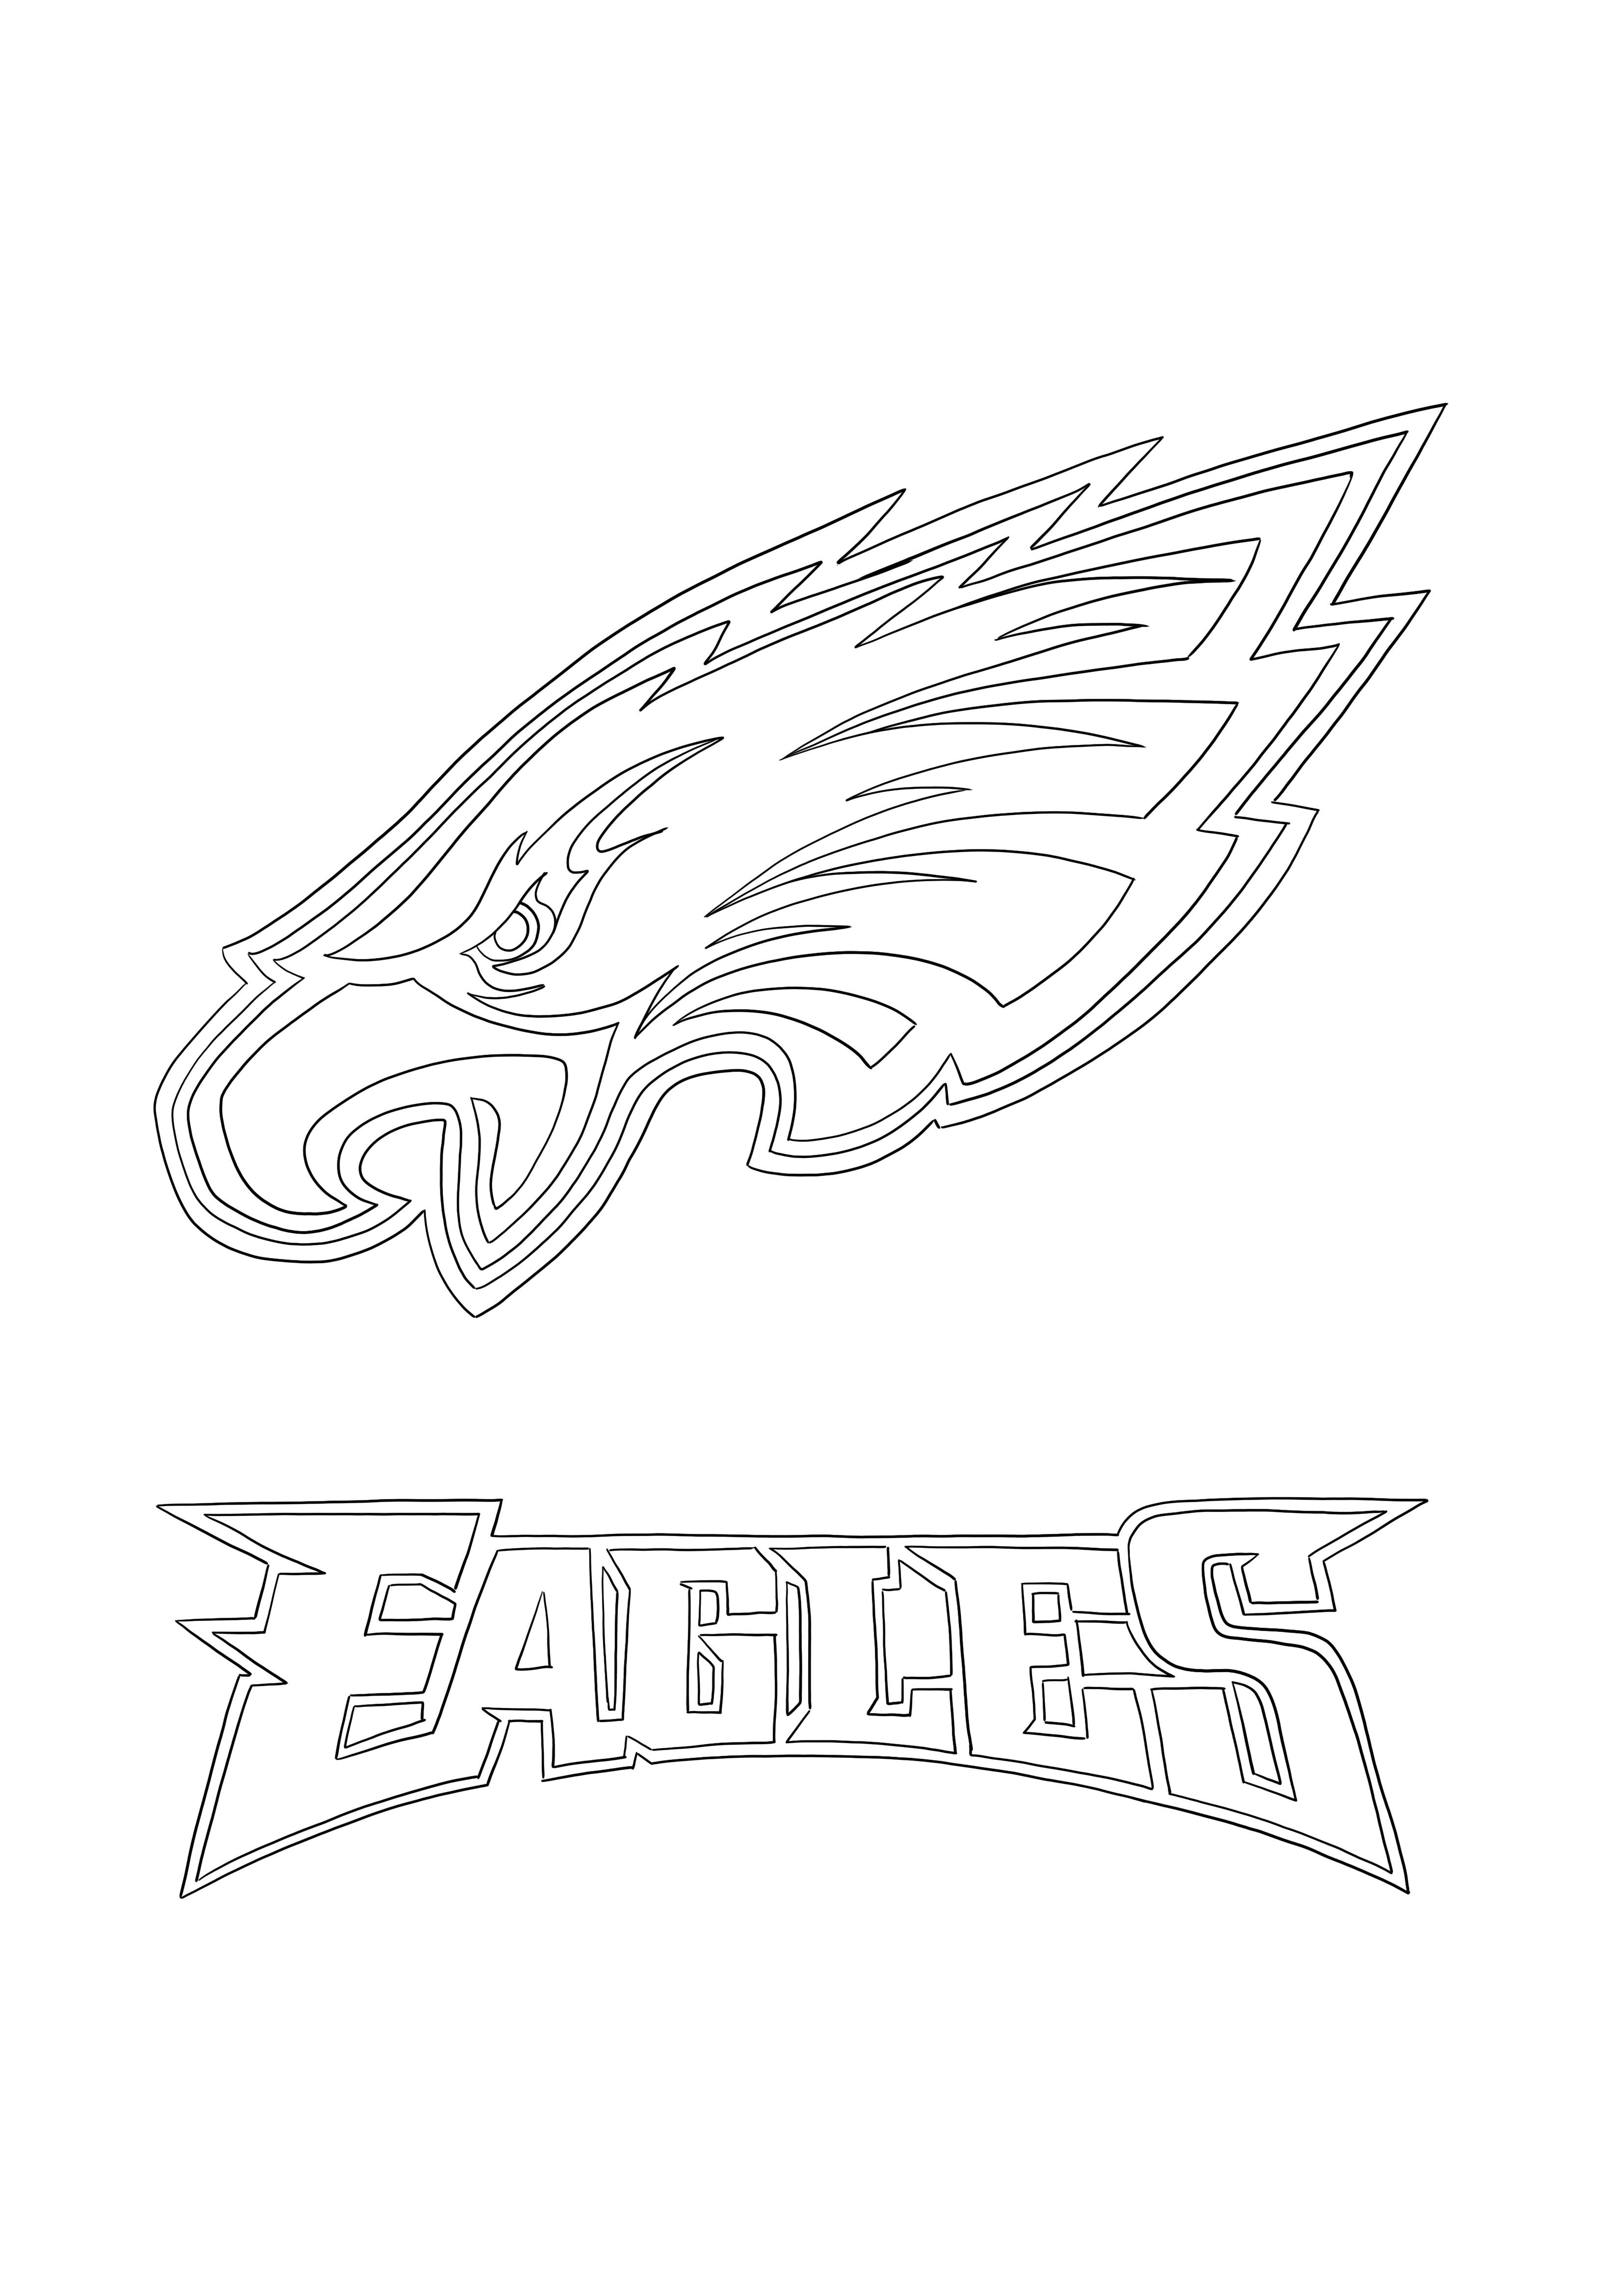 Logotipo do Philadelphia Eagles para colorir e imprimir para crianças